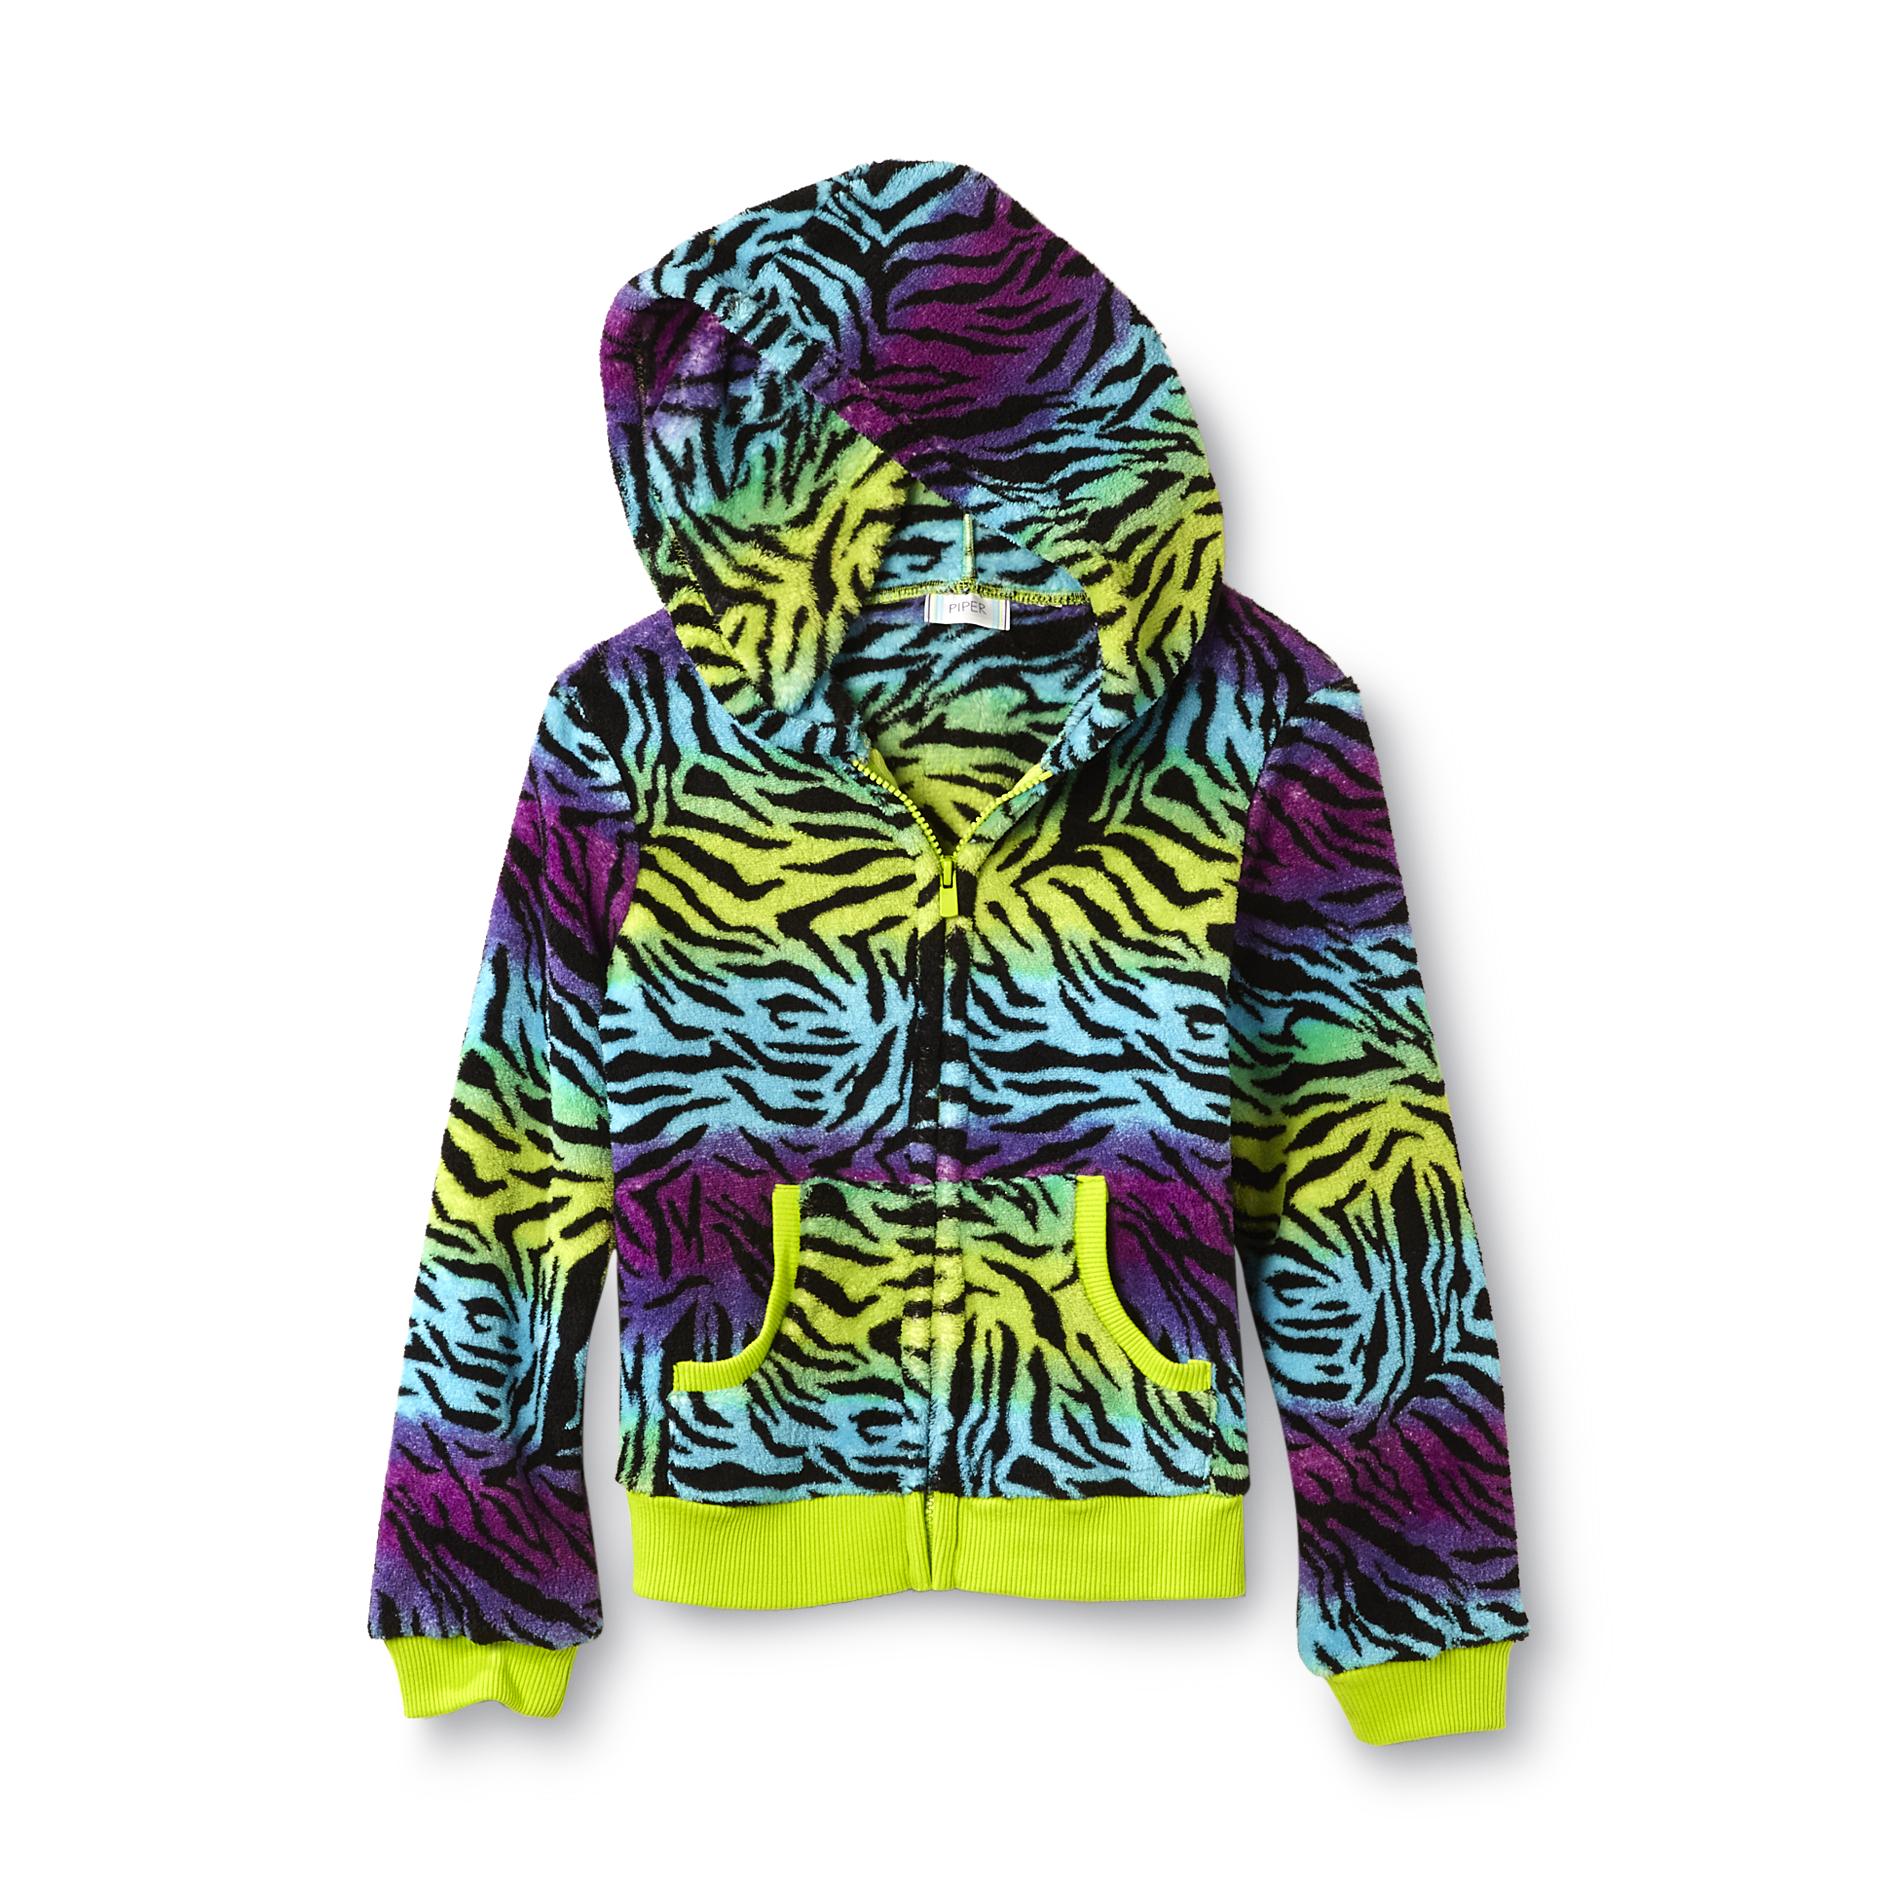 Piper Girl's Fleece Hoodie Jacket - Zebra Print